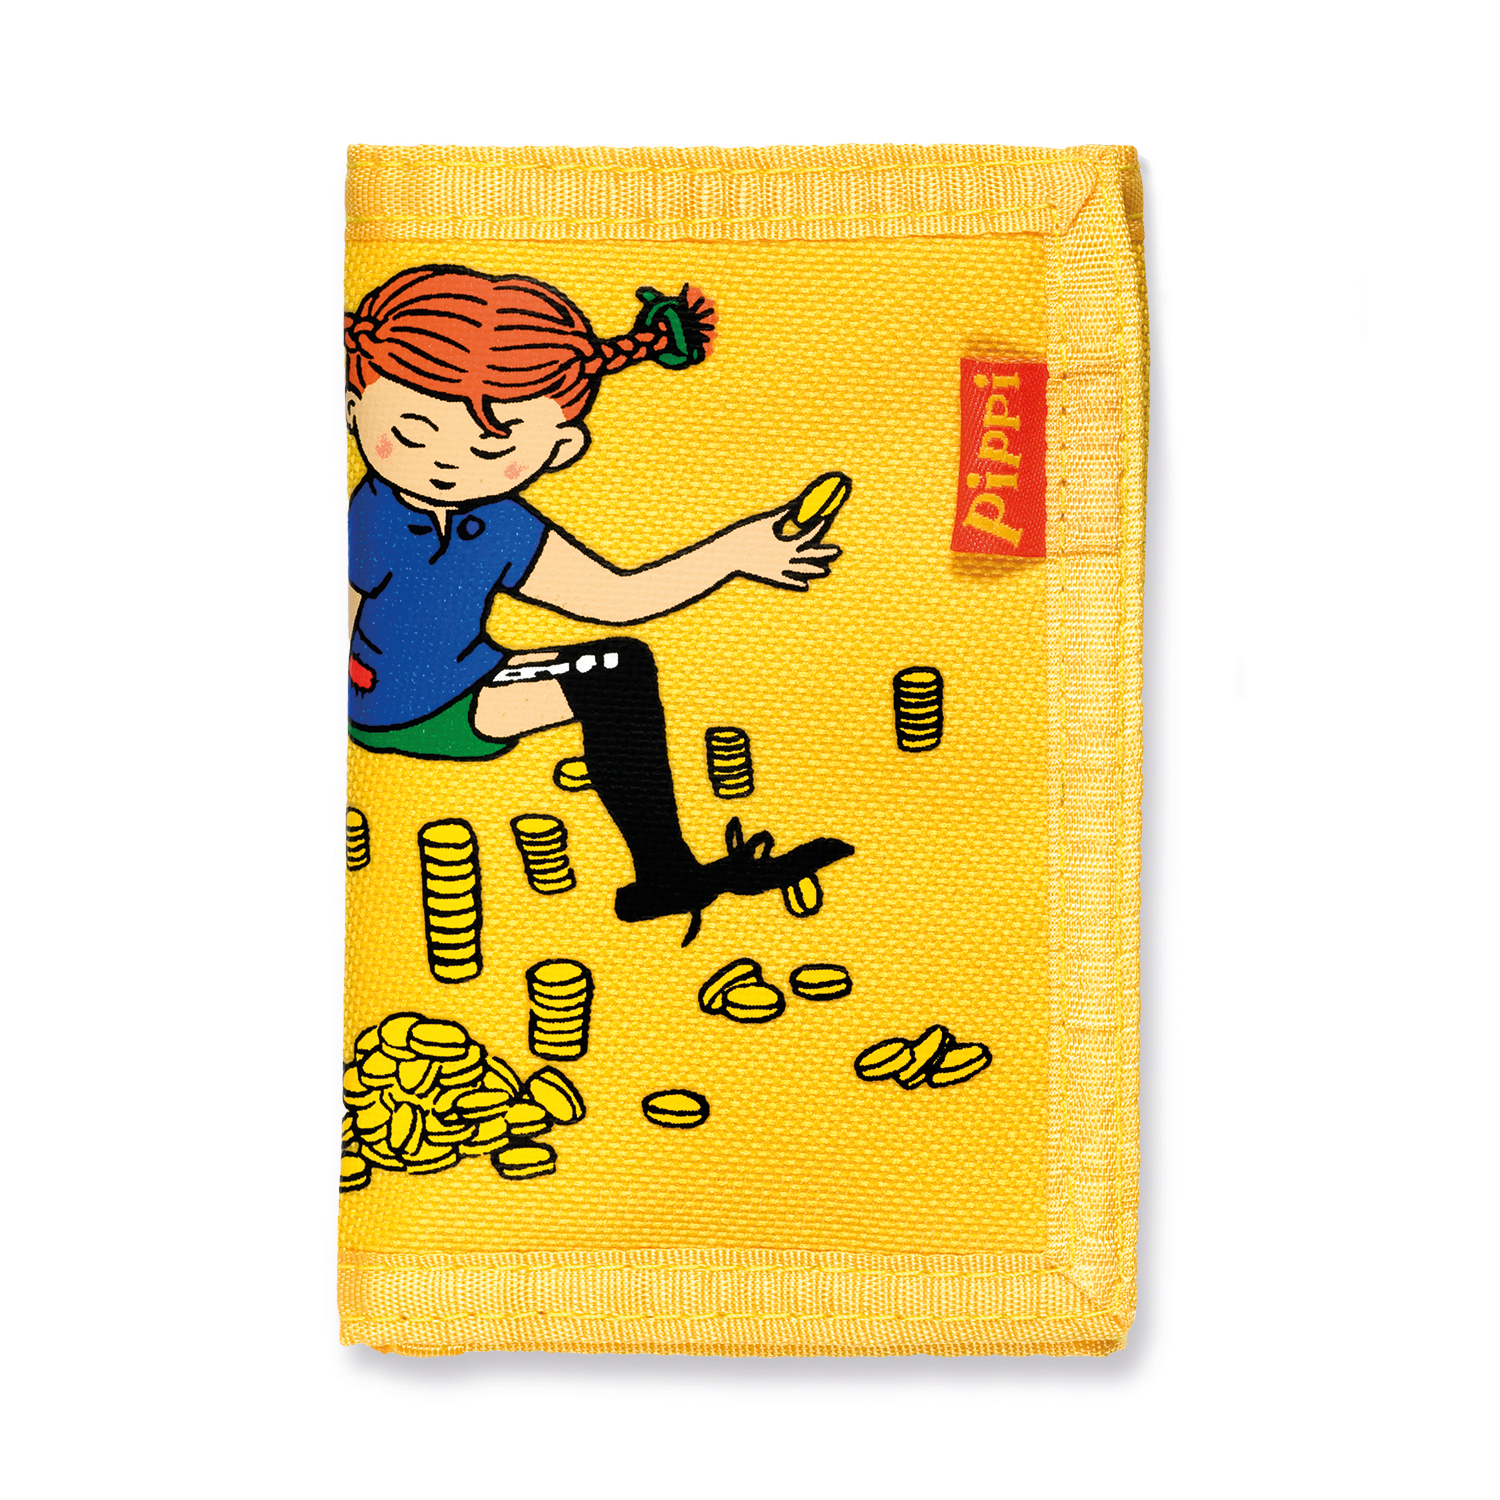 Kindertaschen & Accessoires pippi kindertasche geldbeutel gelb